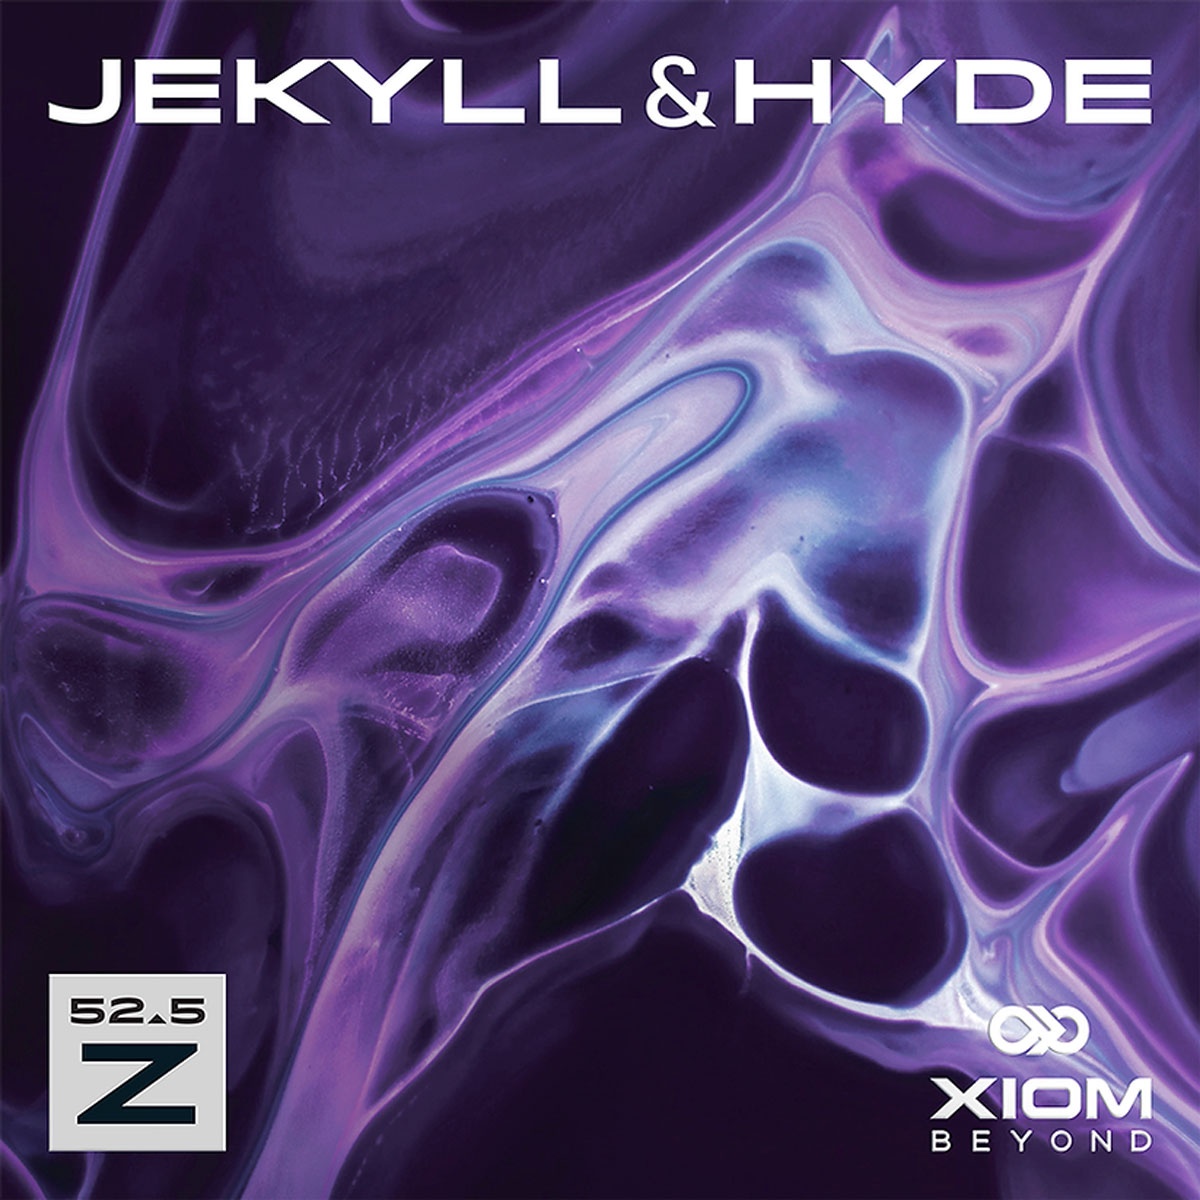 Xiom Belag Jekyll & Hyde Z52,5 schwarz 2,1 mm